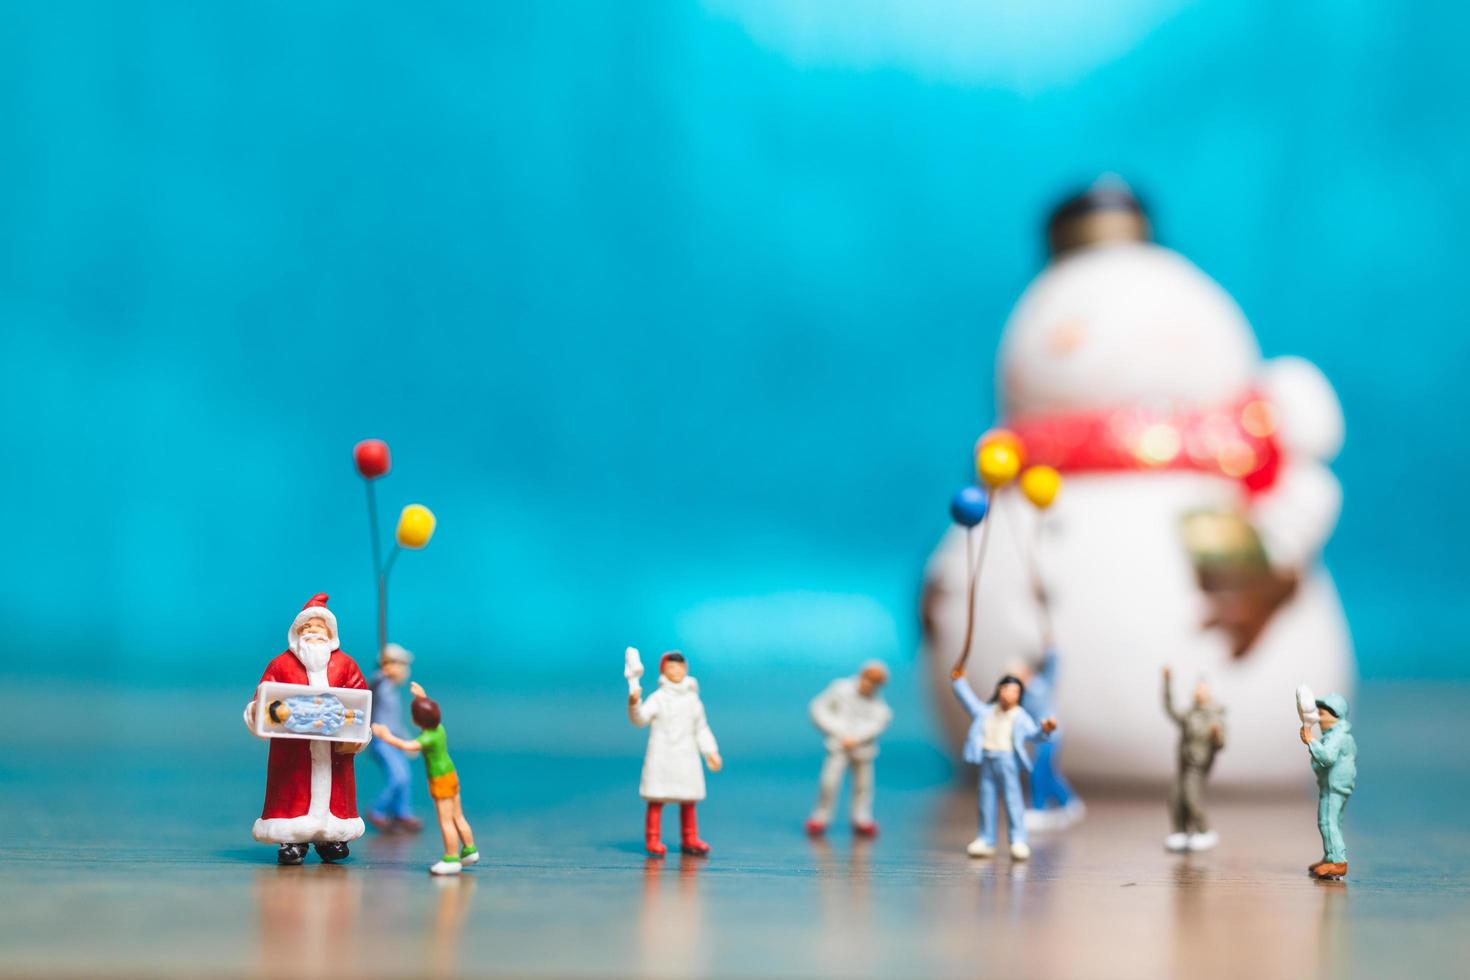 conceito de família feliz em miniatura comemorando natal, natal e feliz ano novo foto